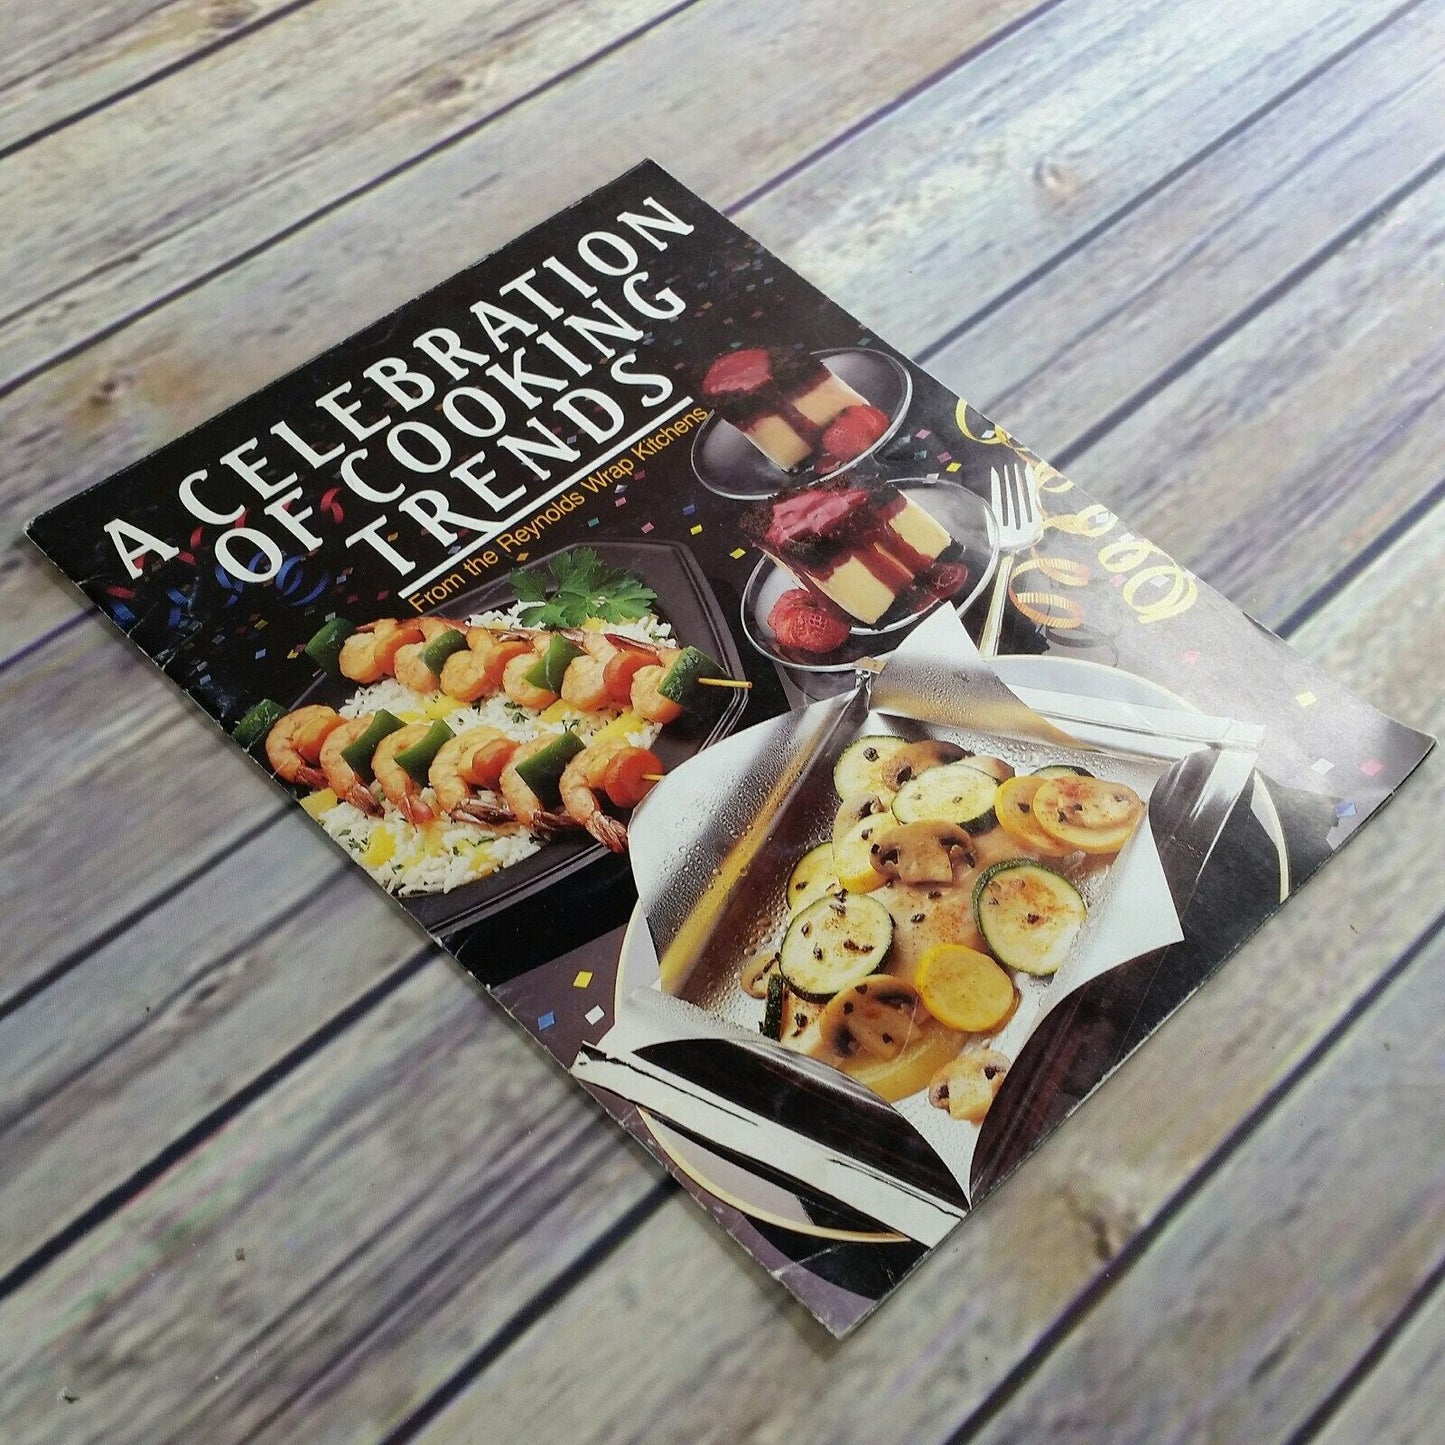 Vintage Cookbook Reynolds Wrap Kitchens A Celebration of Cooking Trends Paperback Booklet Promo Recipes 1970s 1980s